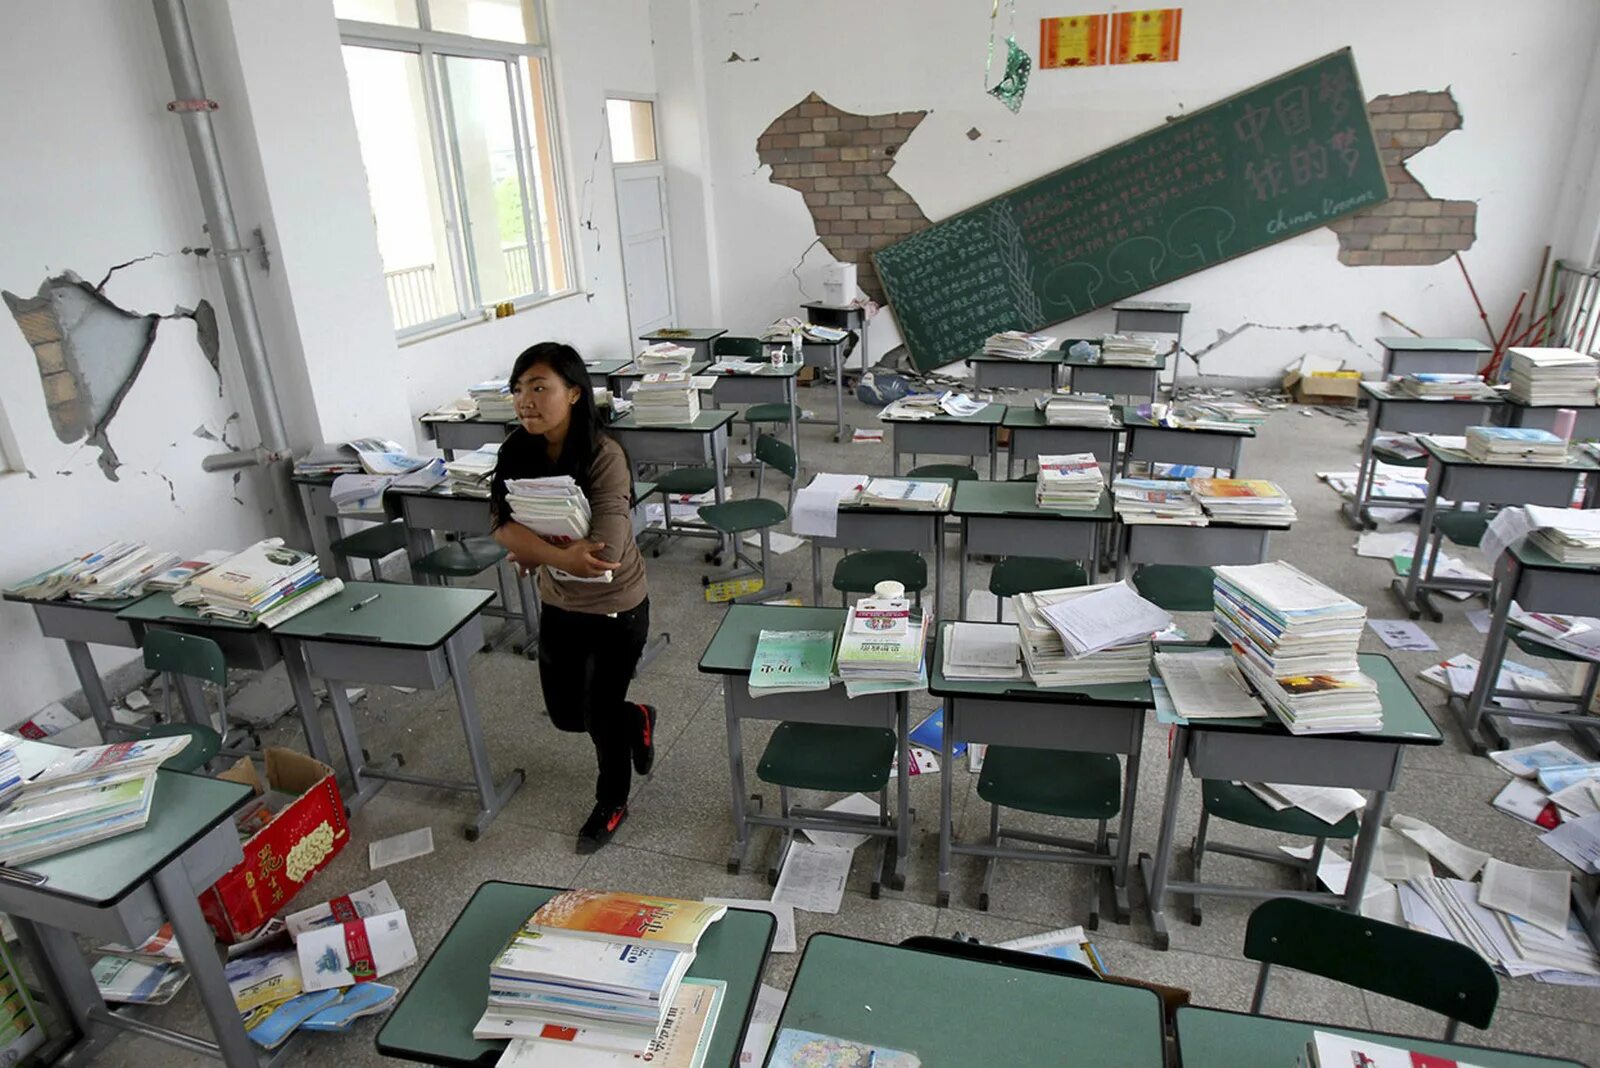 Внутри землетрясения. Землетрясение в школе. Школа после землетрясений. Землетрясение внутри. Землетрясения в учебных заведениях.